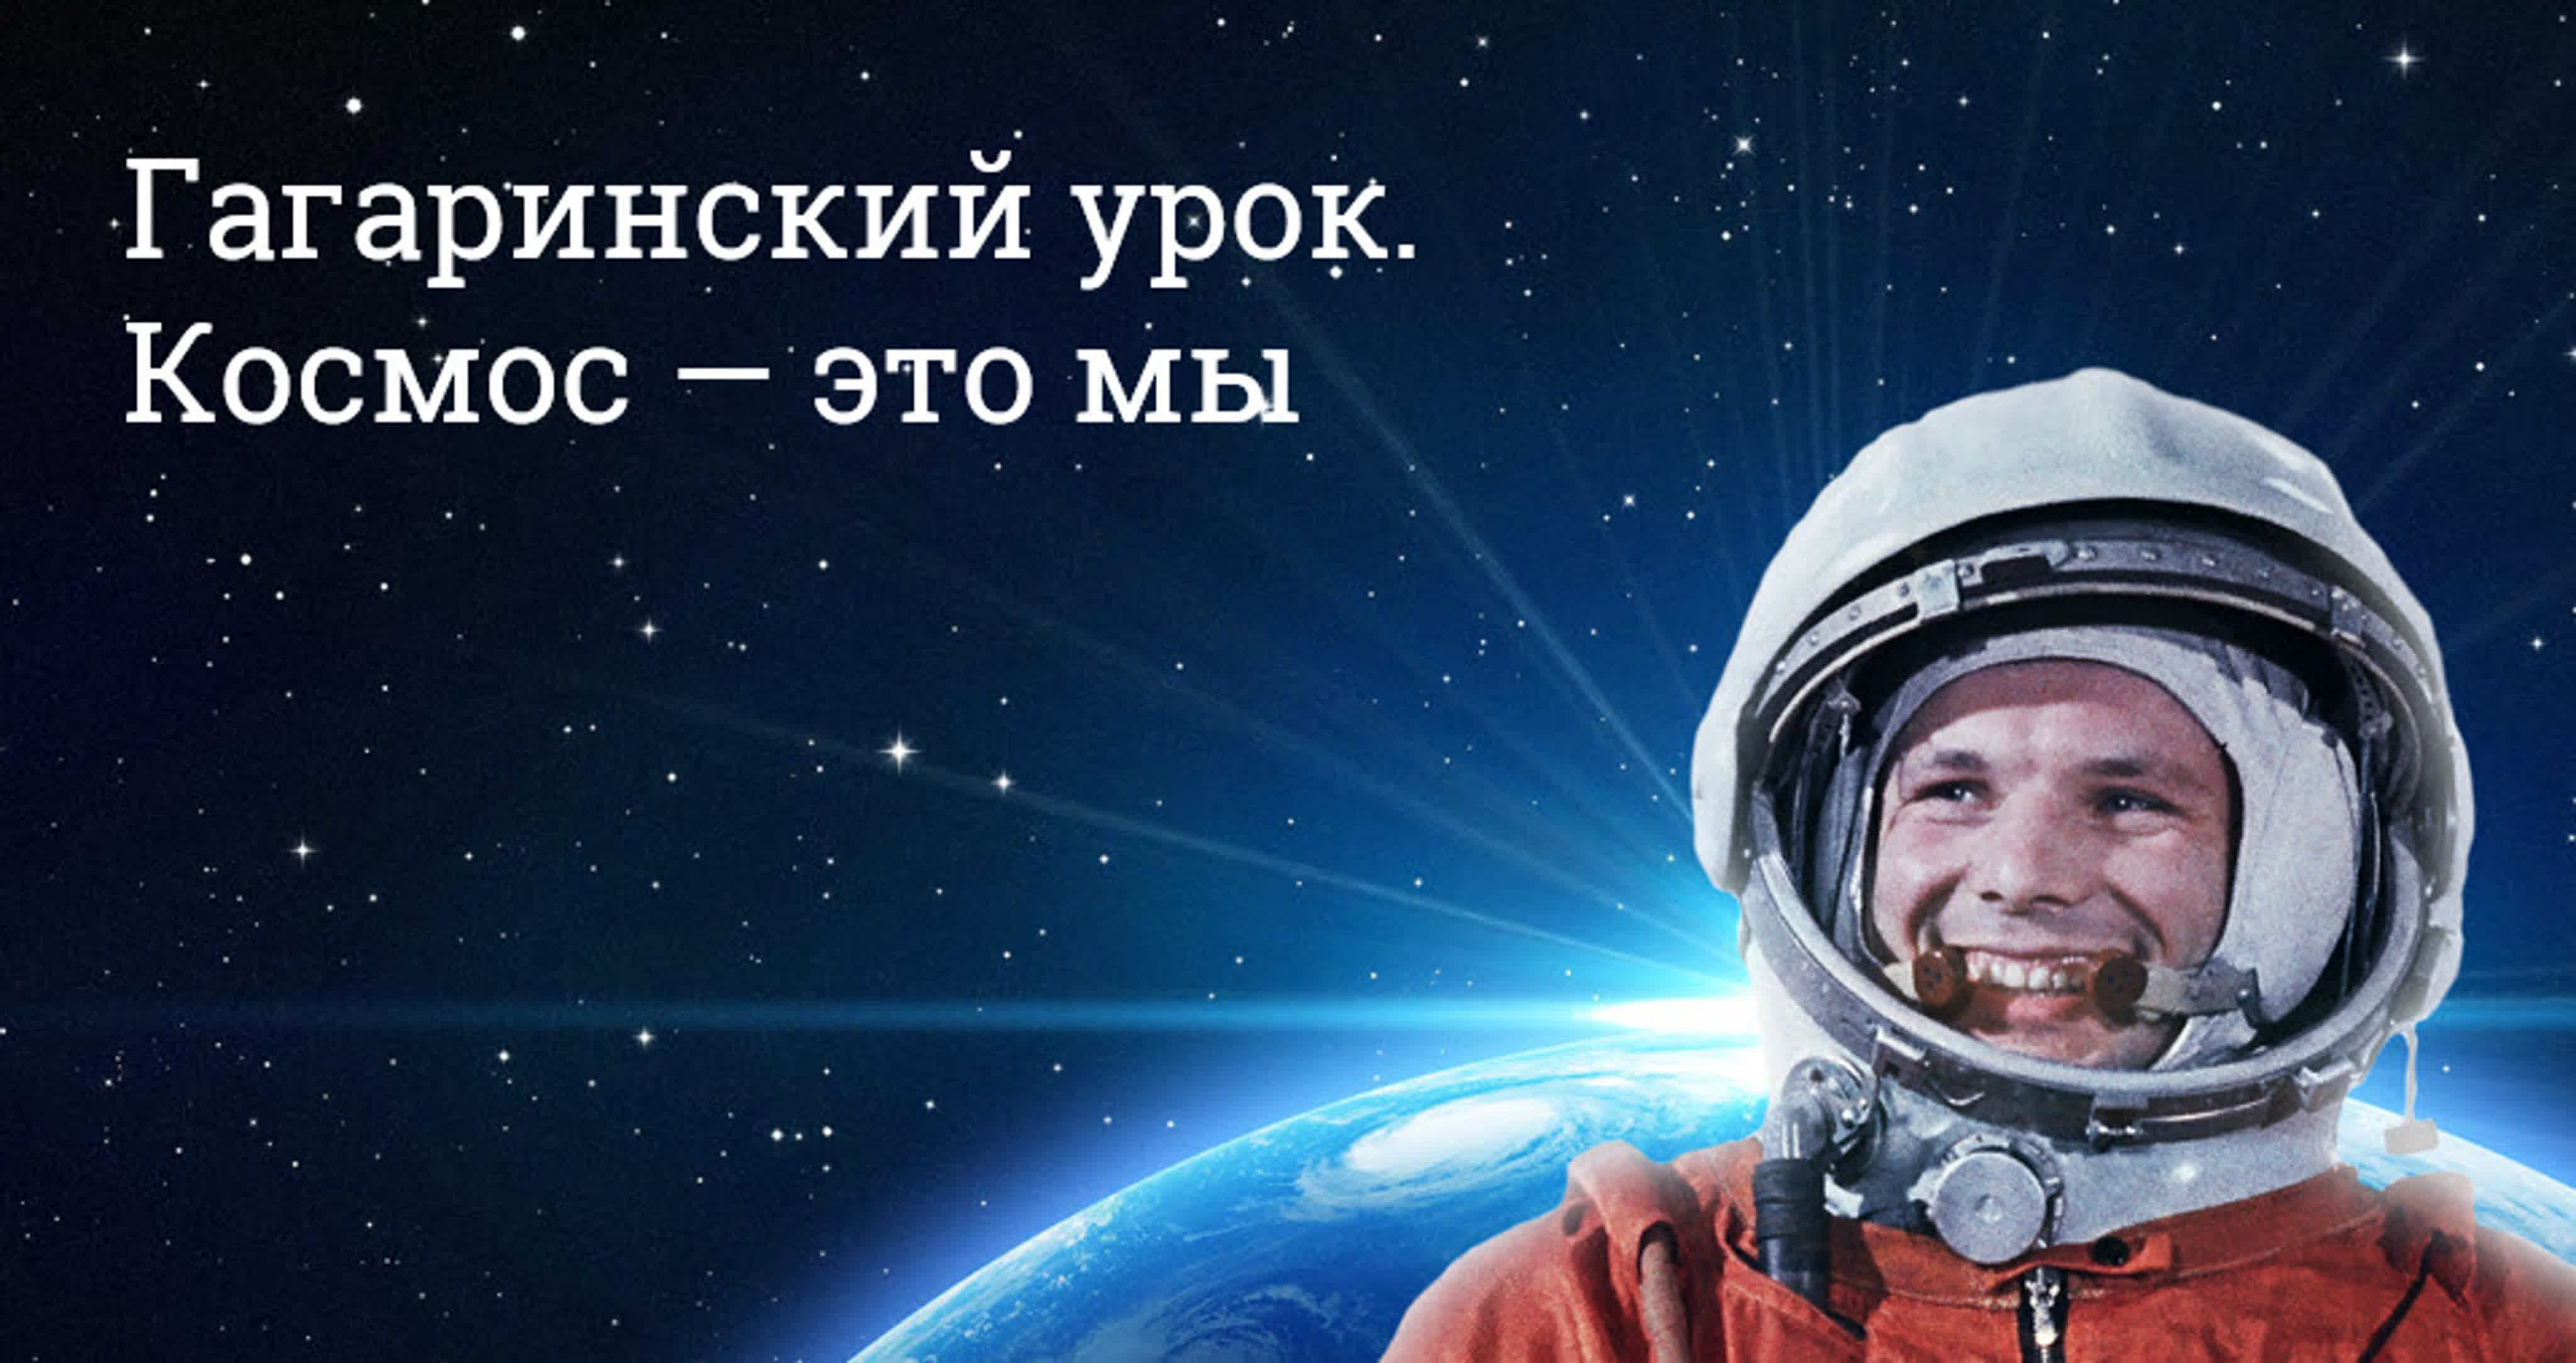 Как называют день космонавтики. Гагаринский урок космос это мы. День космонавтики. День Космонавта. День космонавтики Гагарин.